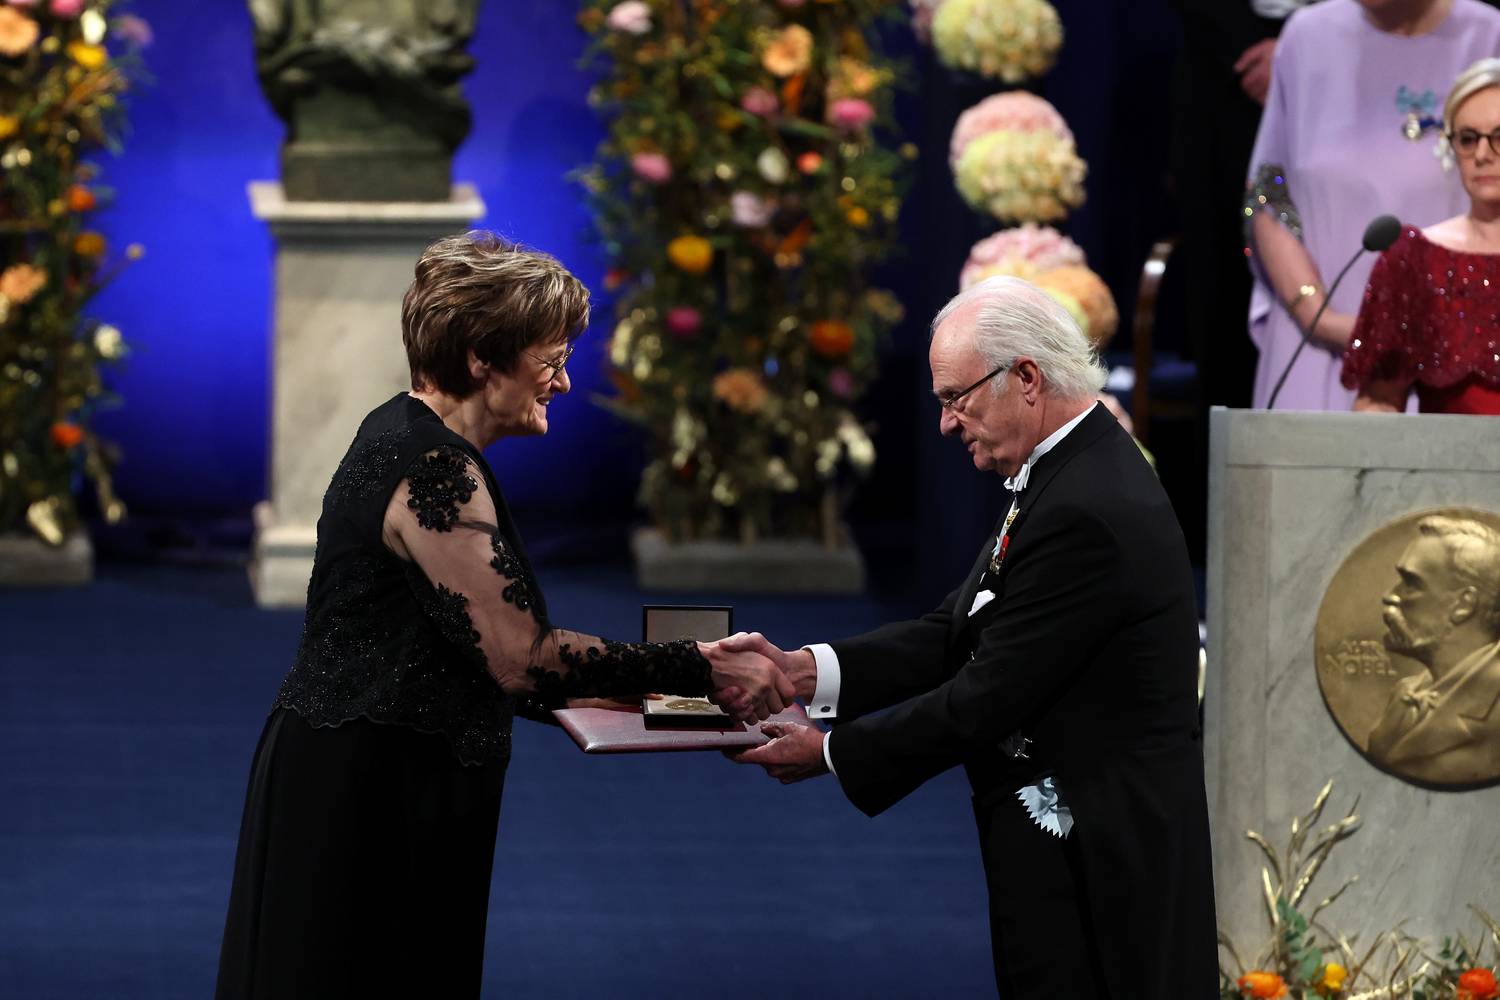 Karikó Katalin átveszi a Nobel-díjat.